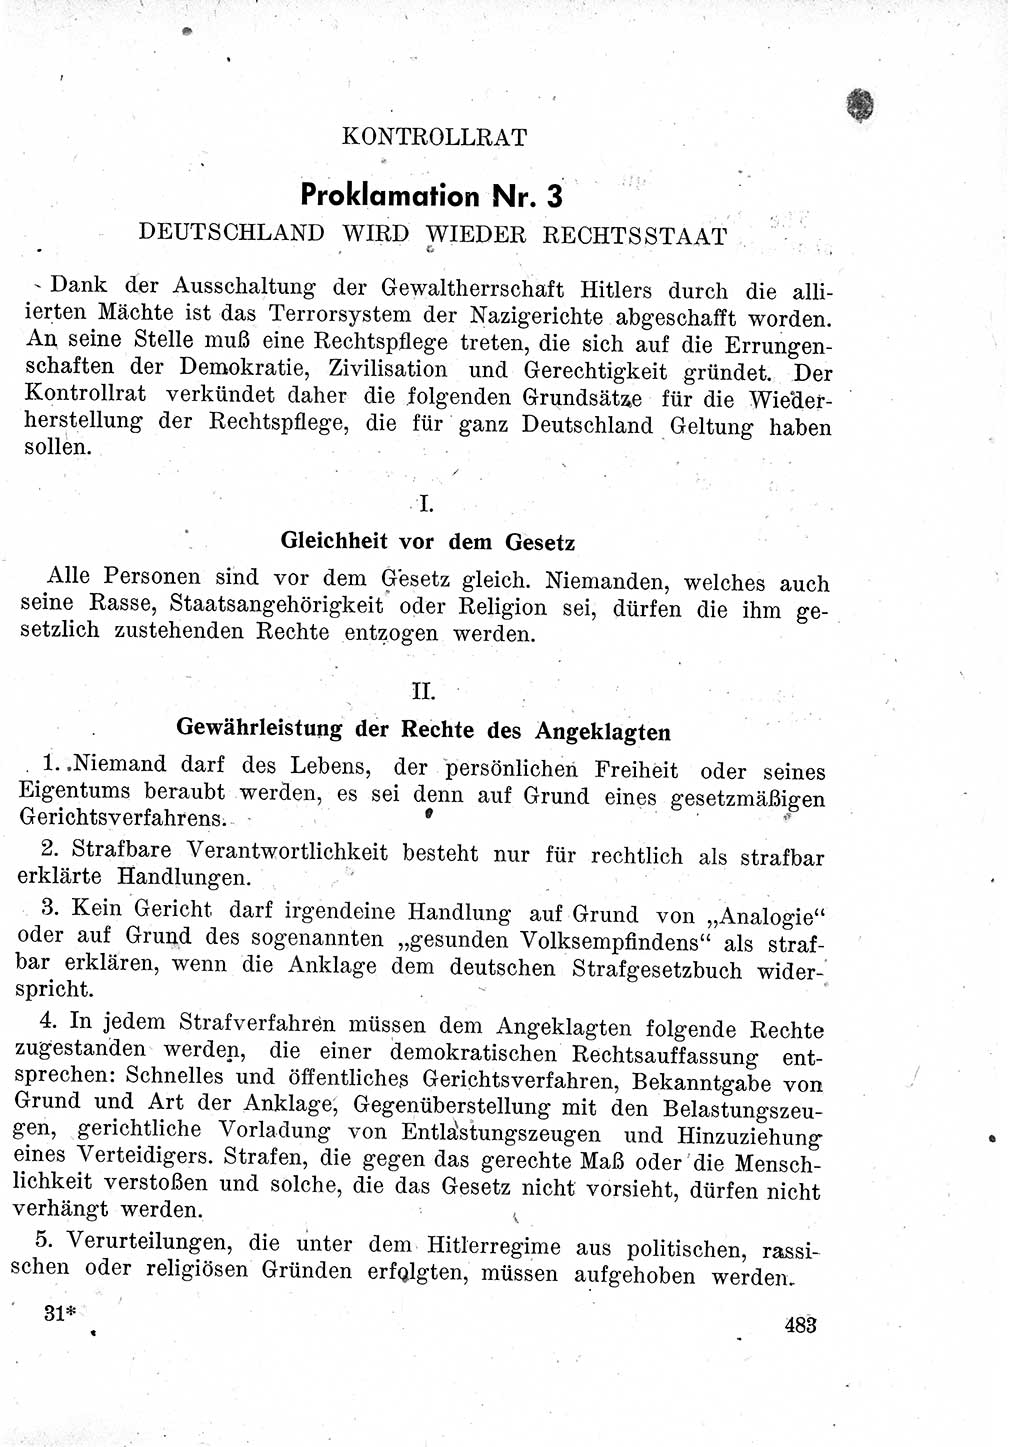 Das Recht der Besatzungsmacht (Deutschland), Proklamationen, Deklerationen, Verordnungen, Gesetze und Bekanntmachungen 1947, Seite 483 (R. Bes. Dtl. 1947, S. 483)